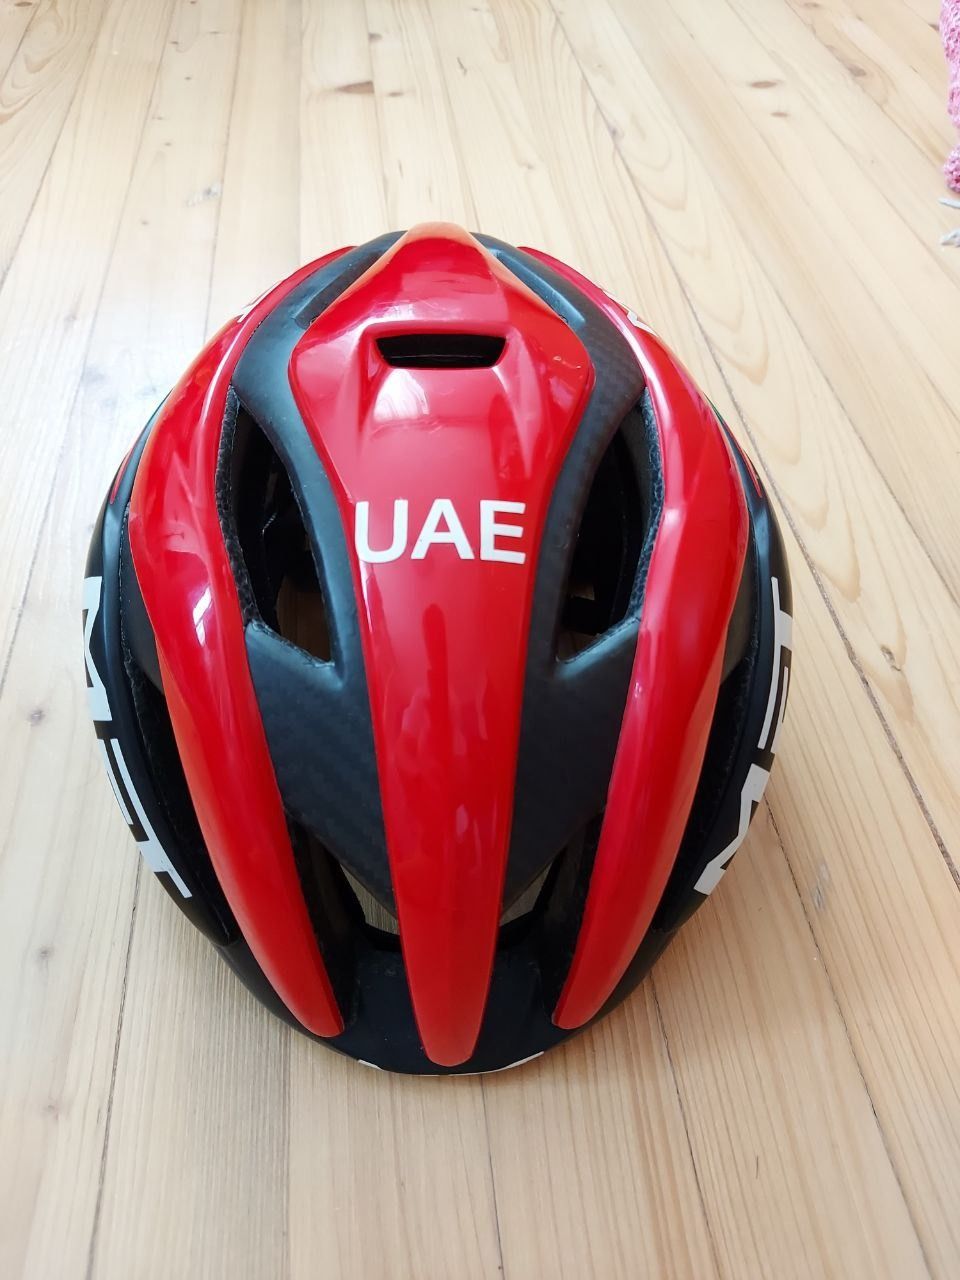 Шлем MET UAE team emirates